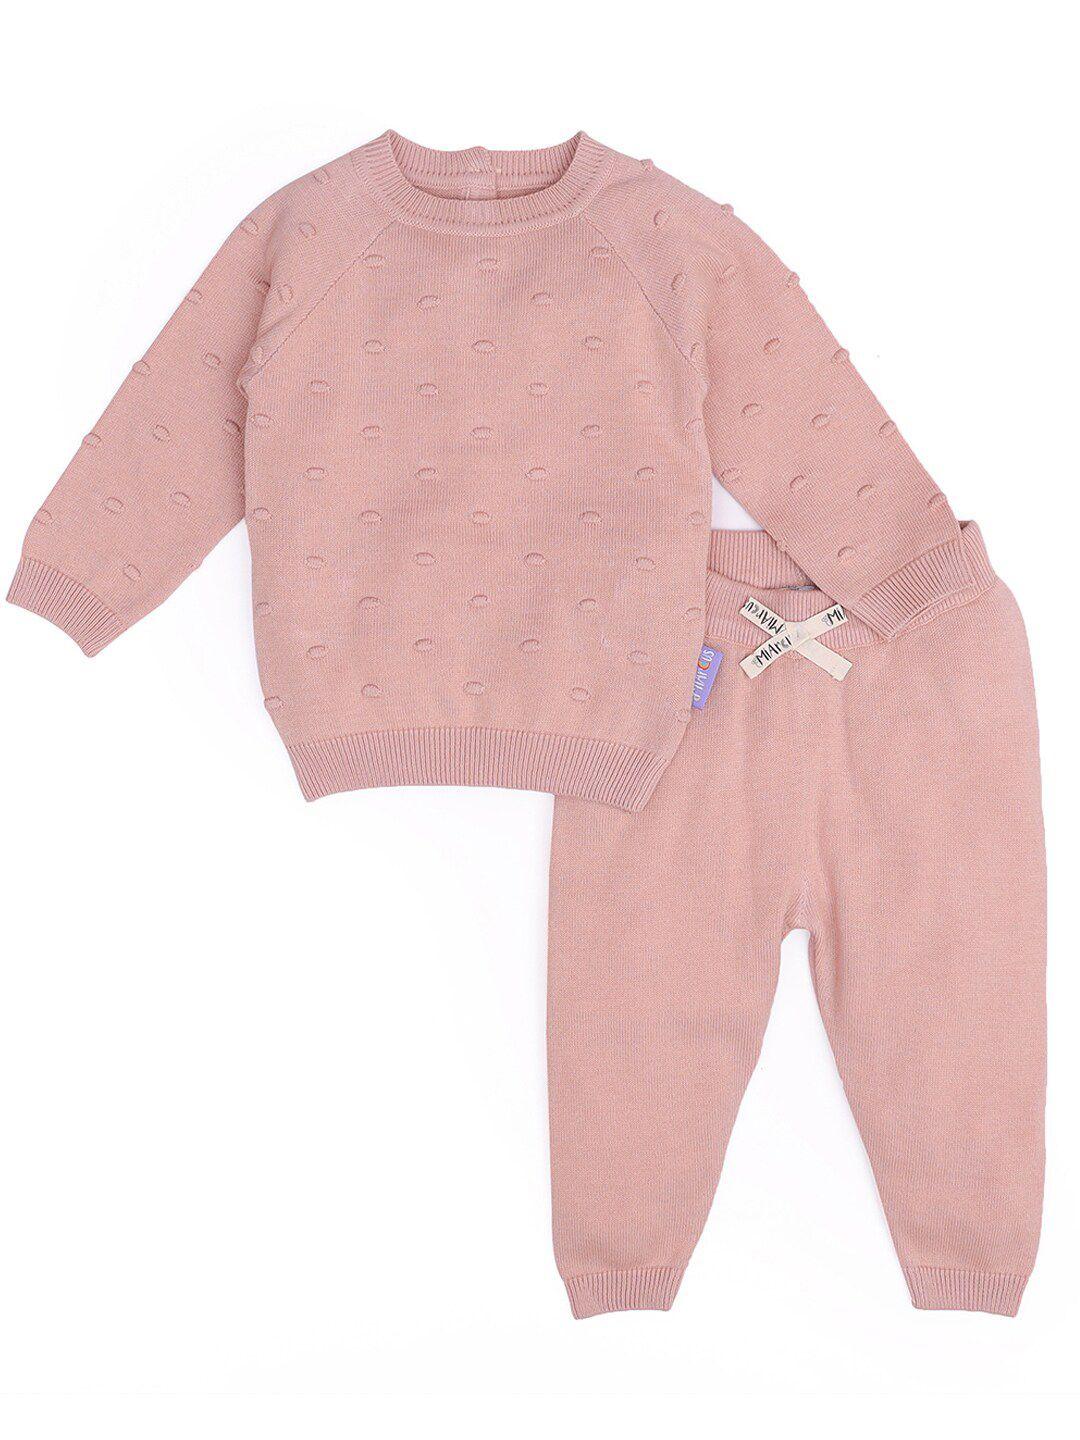 miarcus-kids-peach-coloured-pure-cotton-t-shirt-with-pyjamas